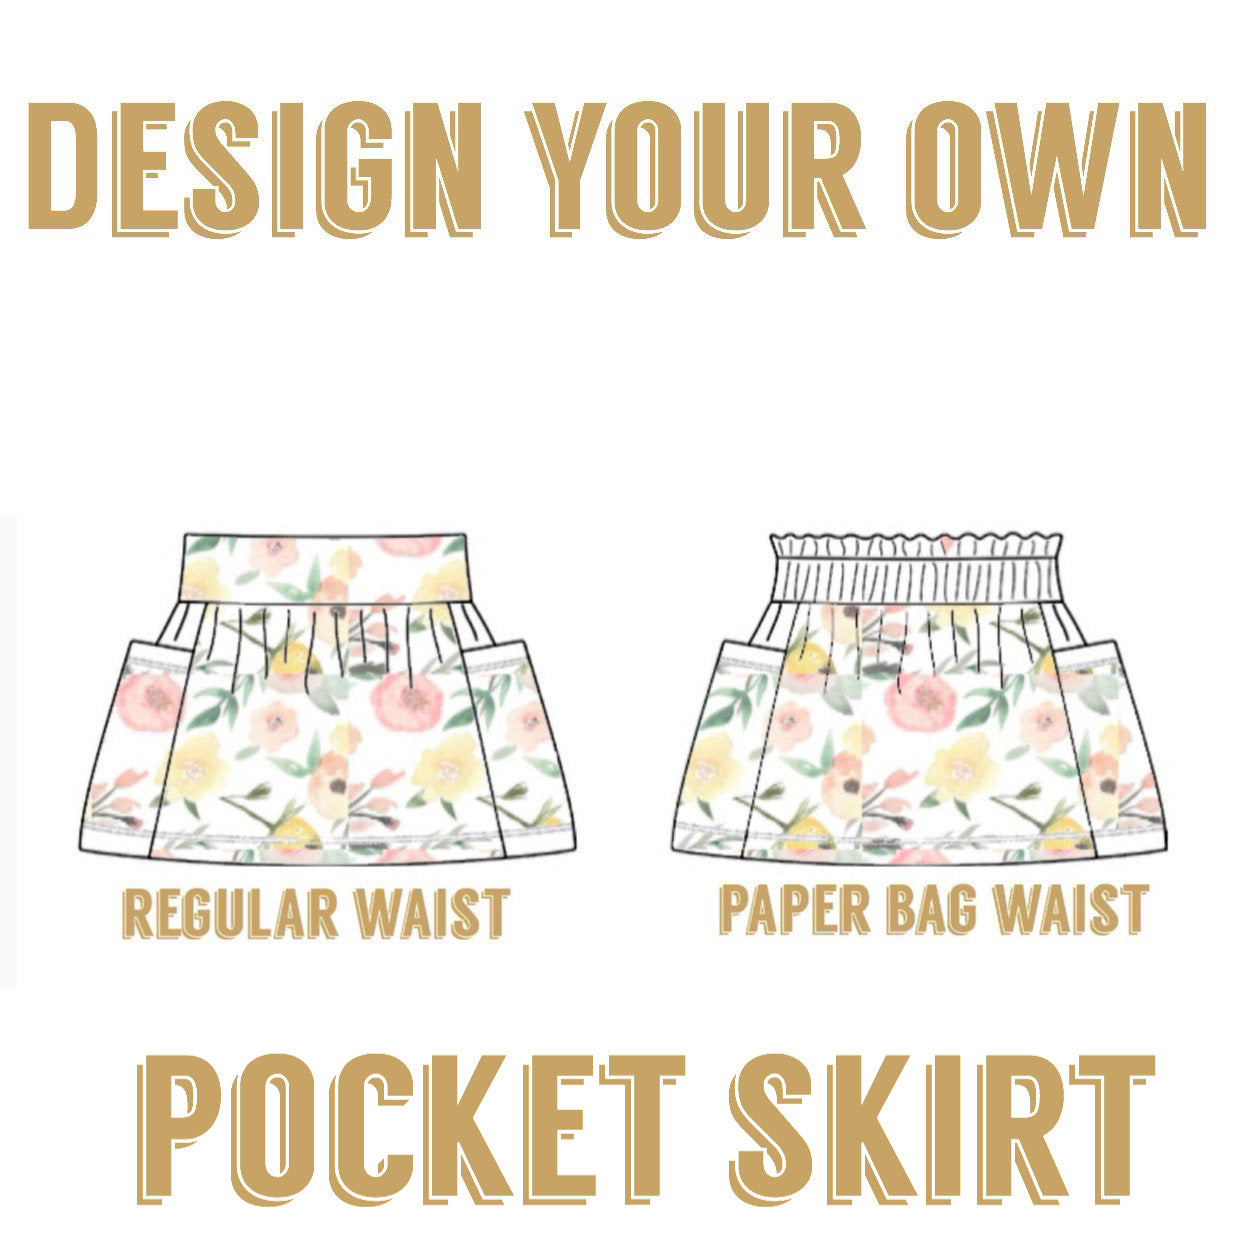 Design your own| Pocket Skirt